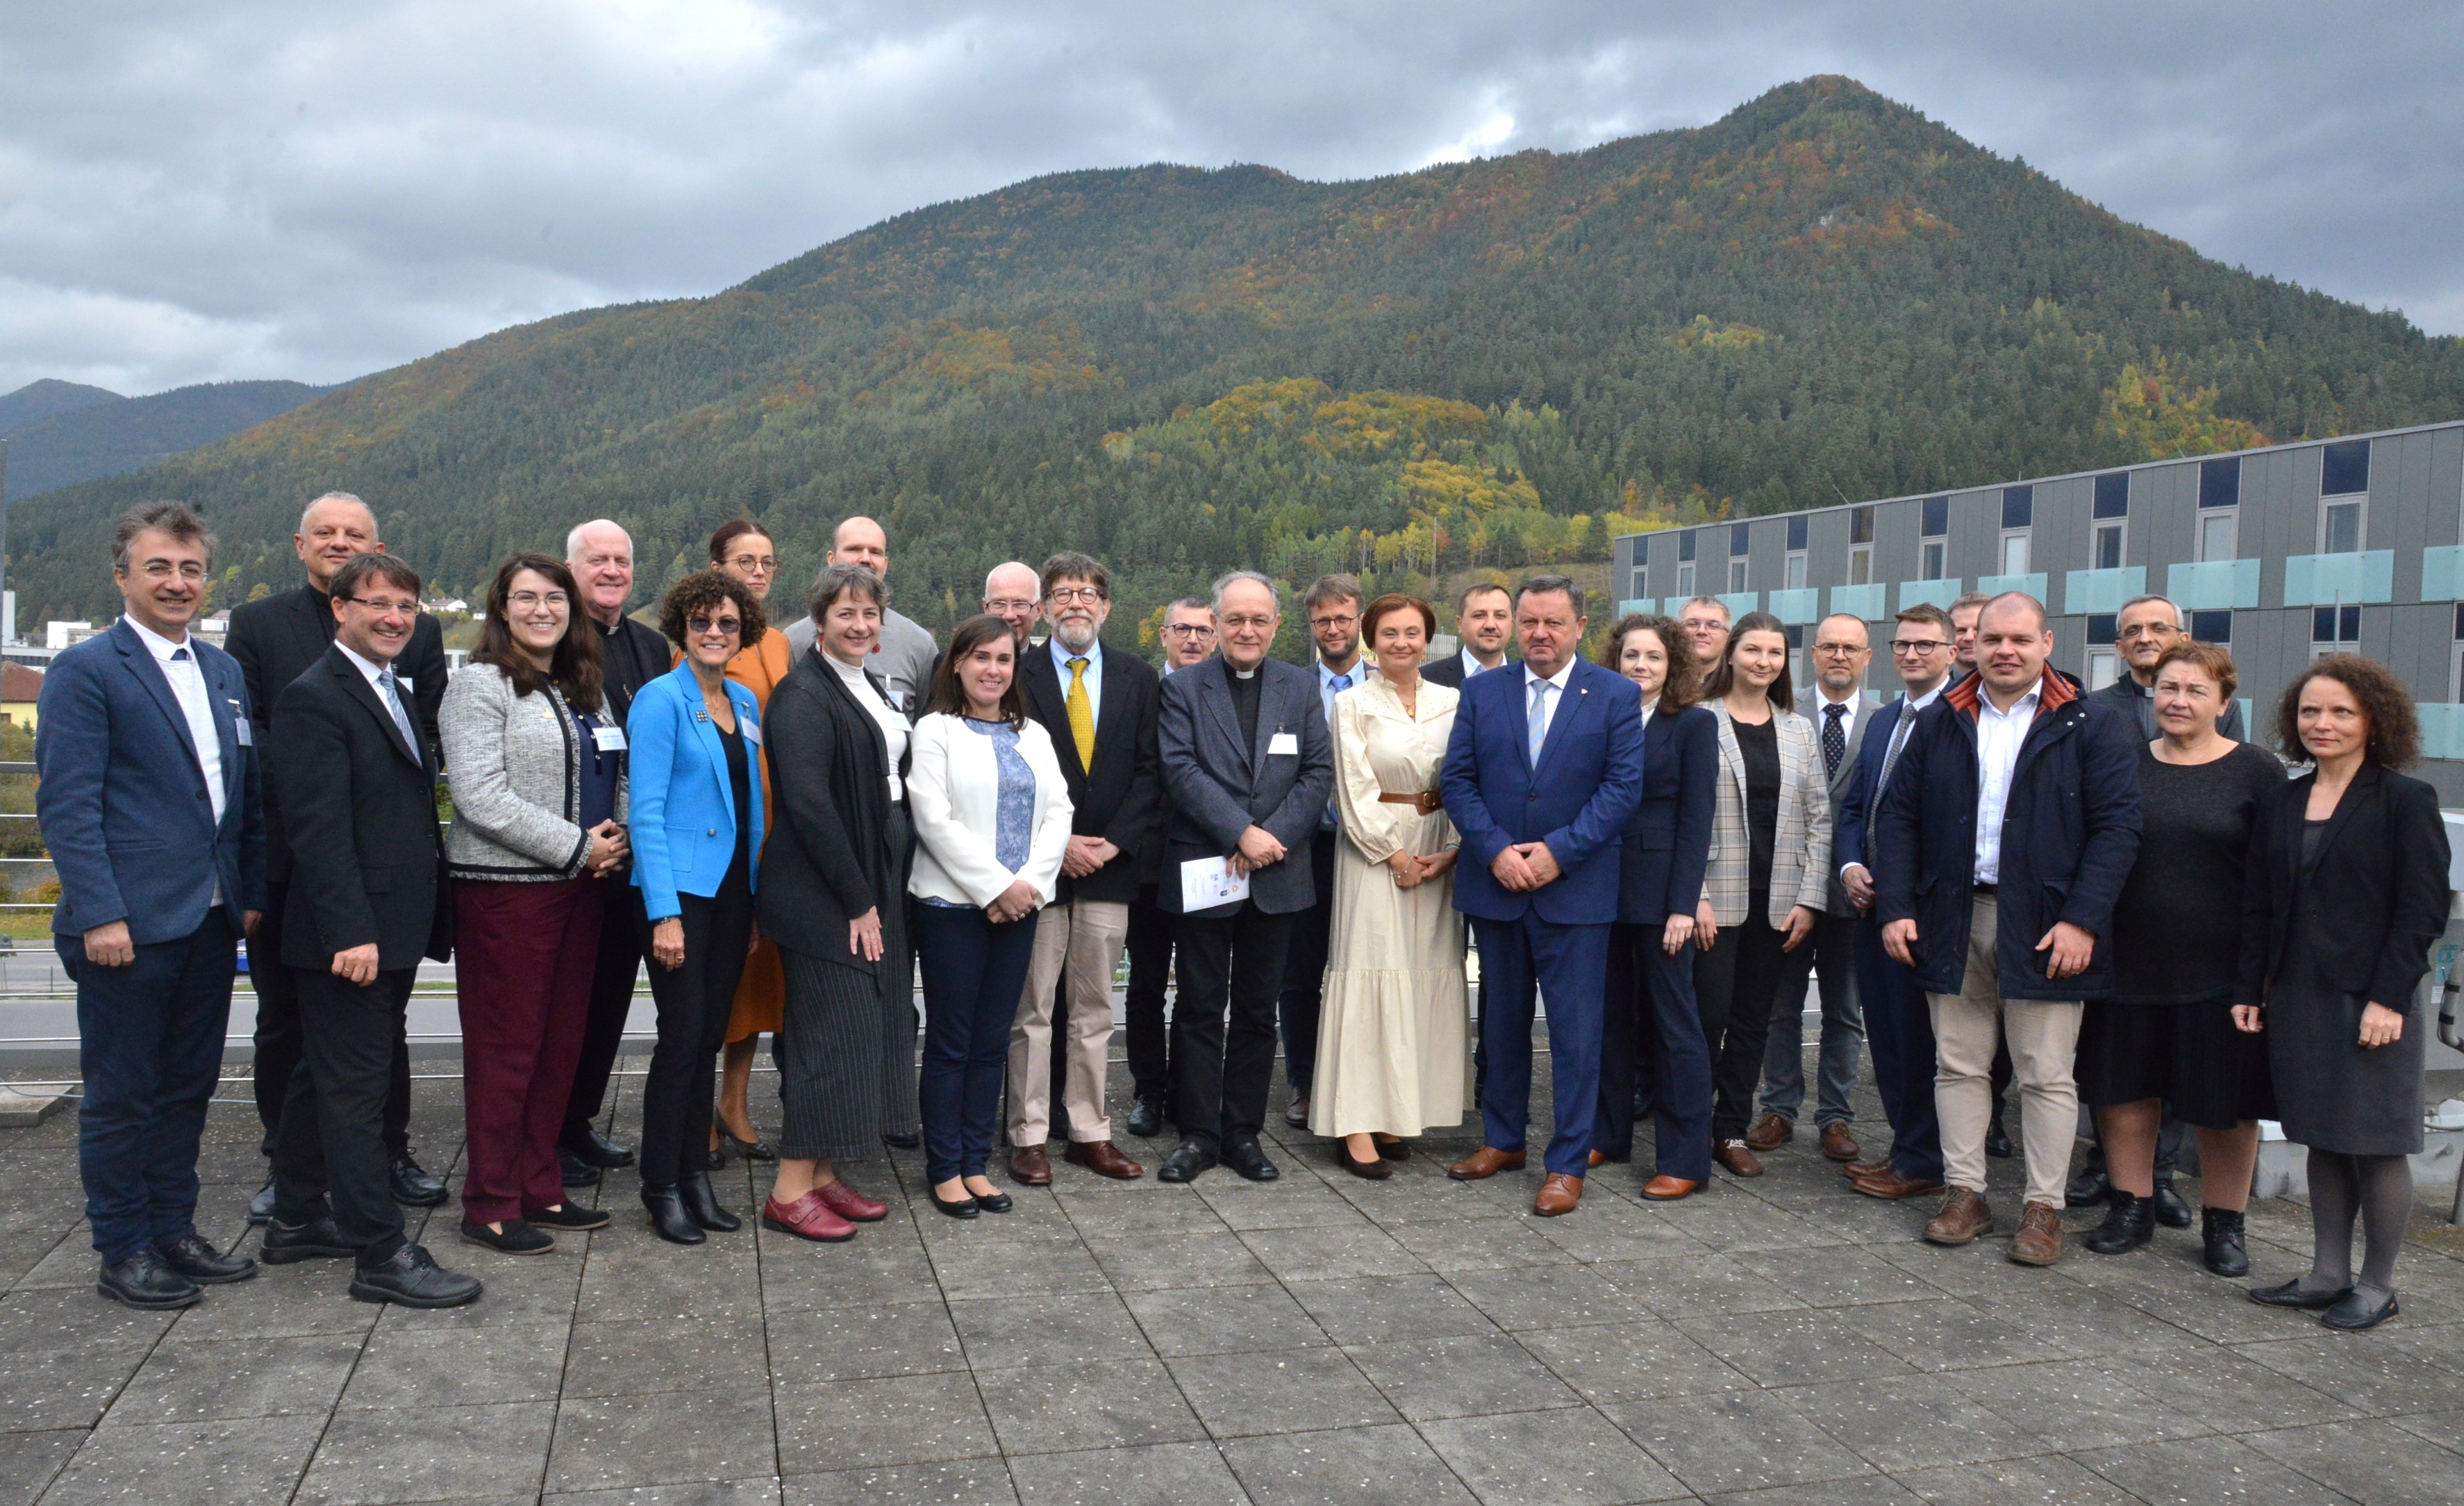 Annual conference of Catholic University Partnership